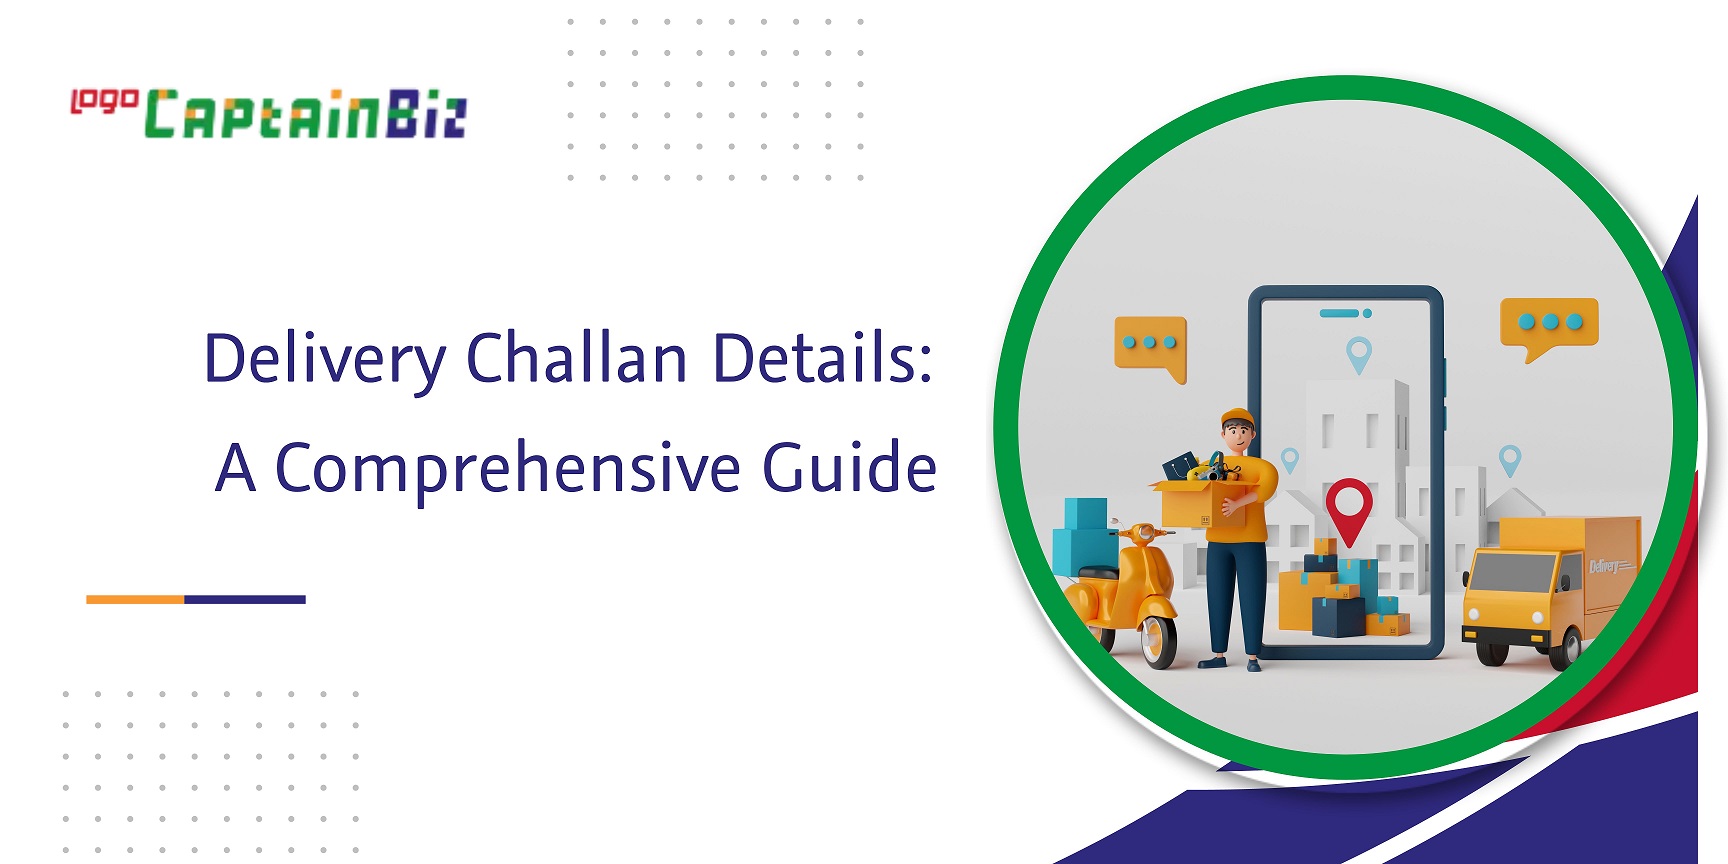 CaptainBiz: delivery challan details, a comprehensive guide